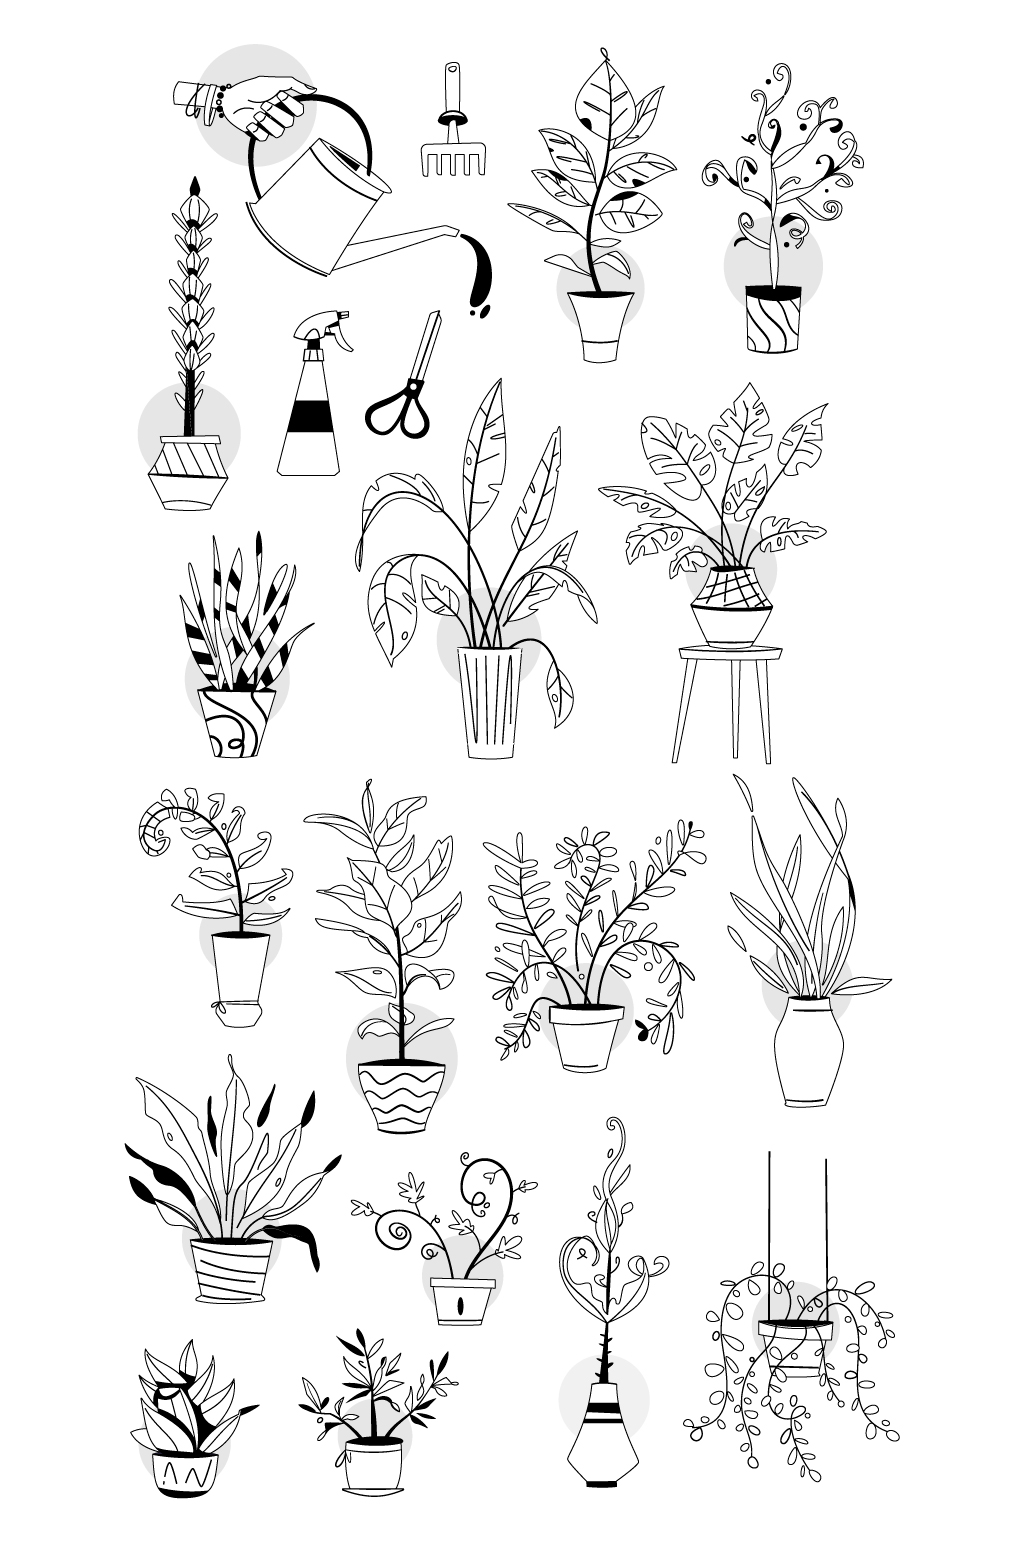 1000种简笔植物手绘图片